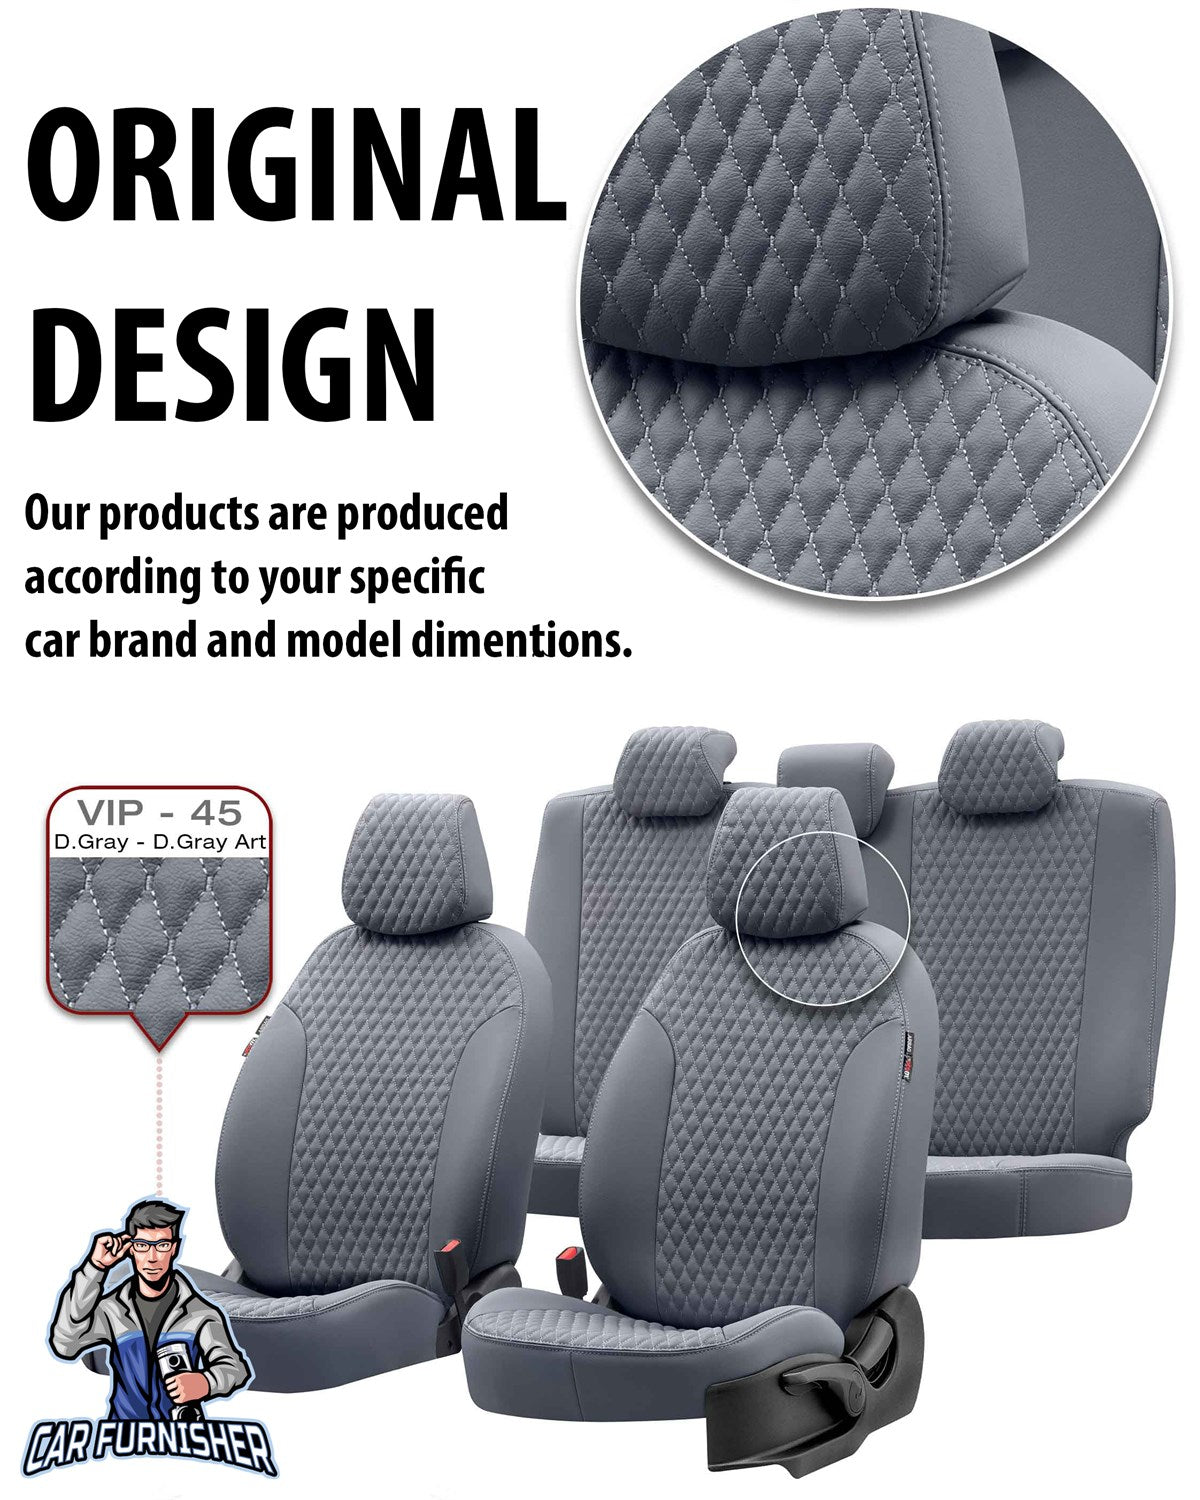 Kia Cerato Seat Covers Amsterdam Leather Design Beige Leather